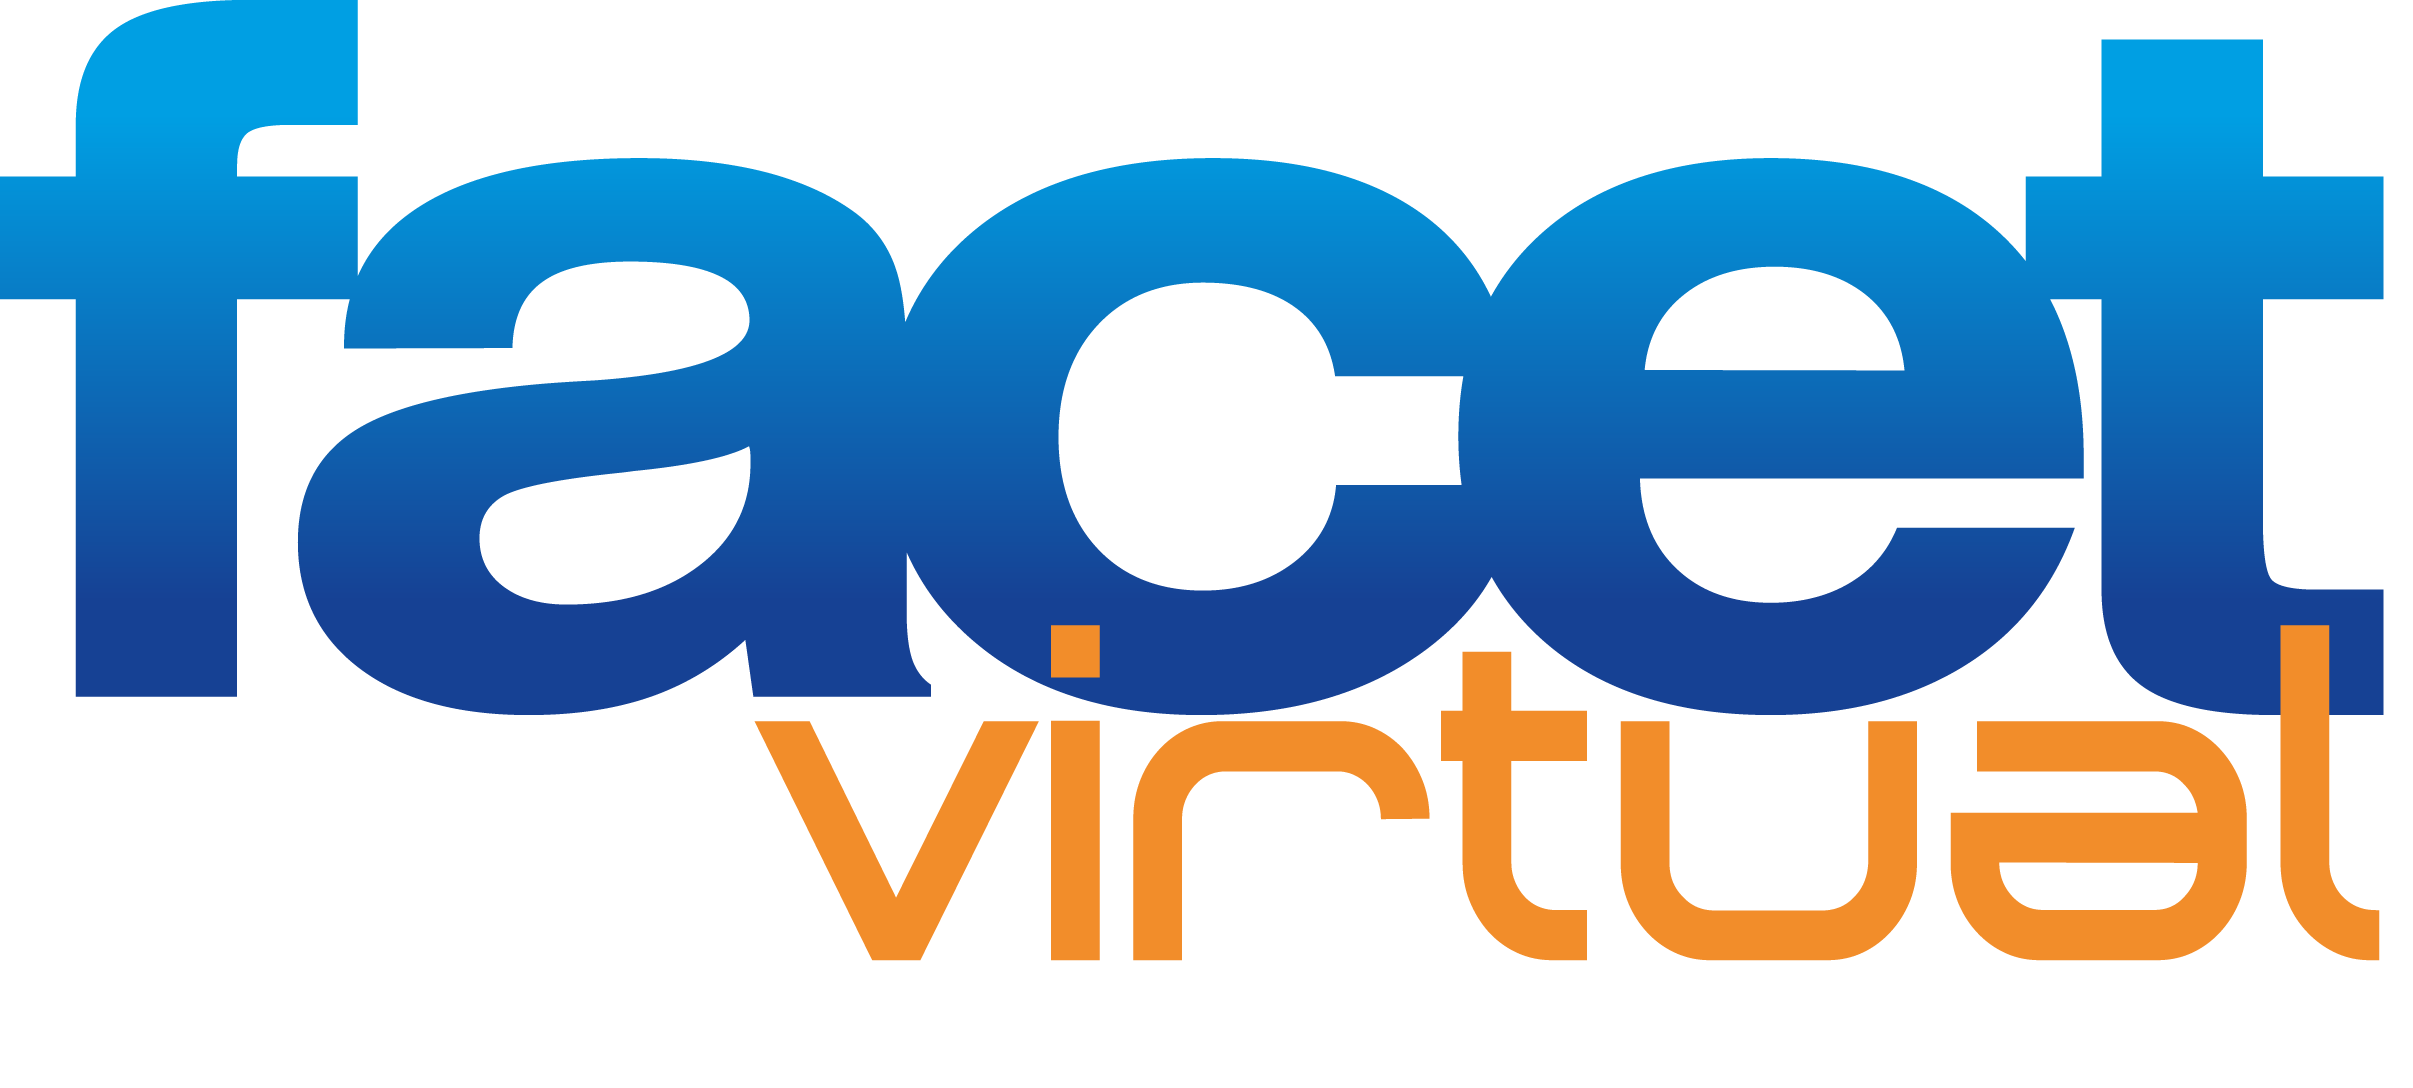 logo_facet_virtual